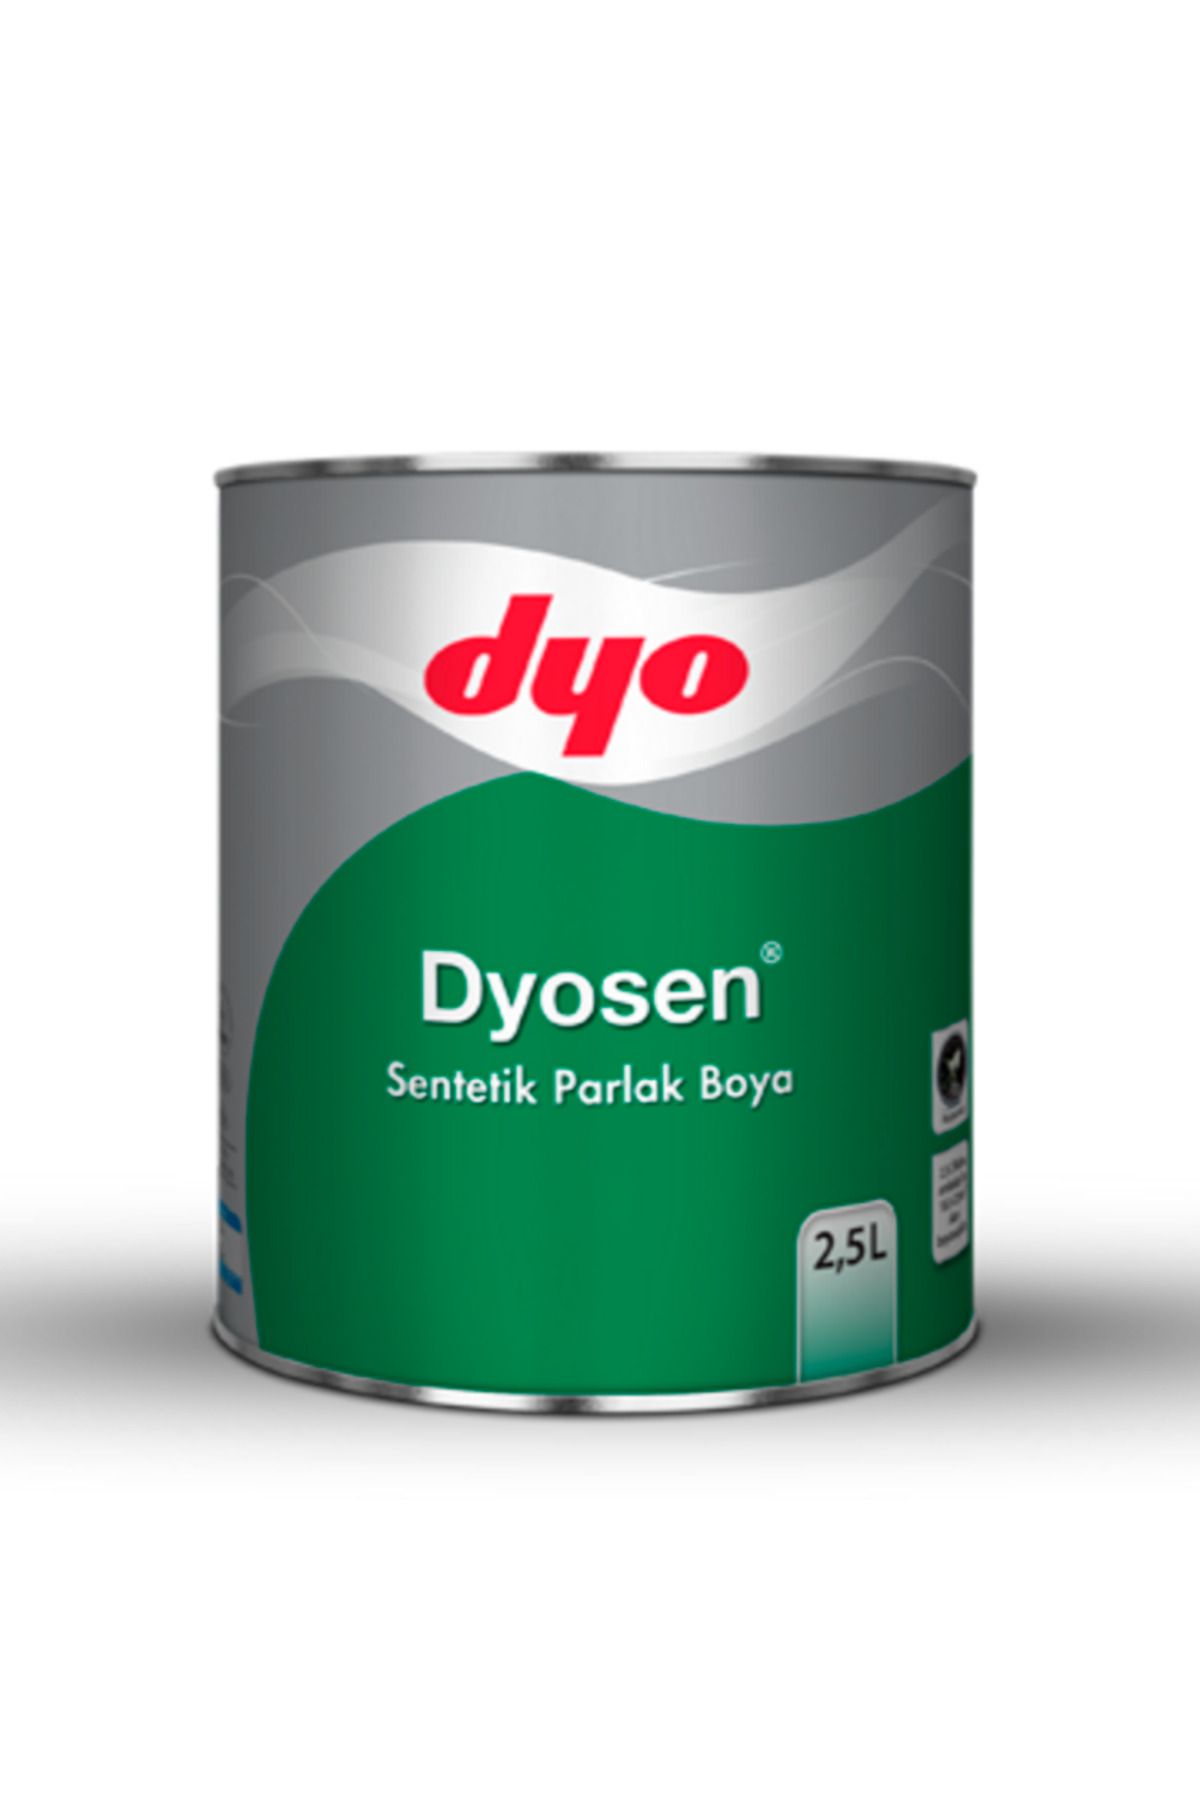 Dyo Dyosen Sentetik Parlak Boya 2,5LT